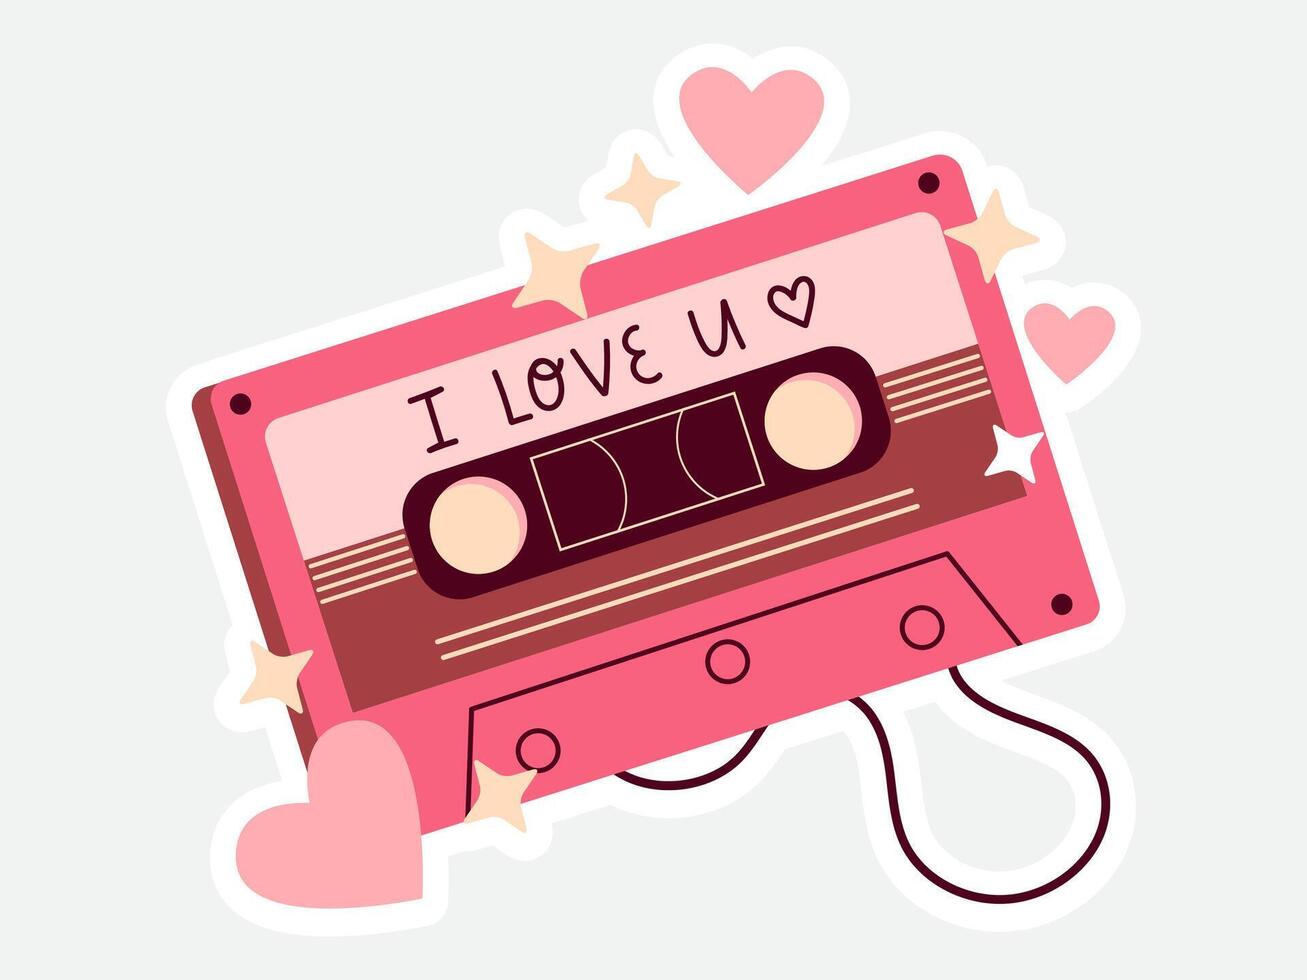 liefde Valentijn sticker illustratie vector